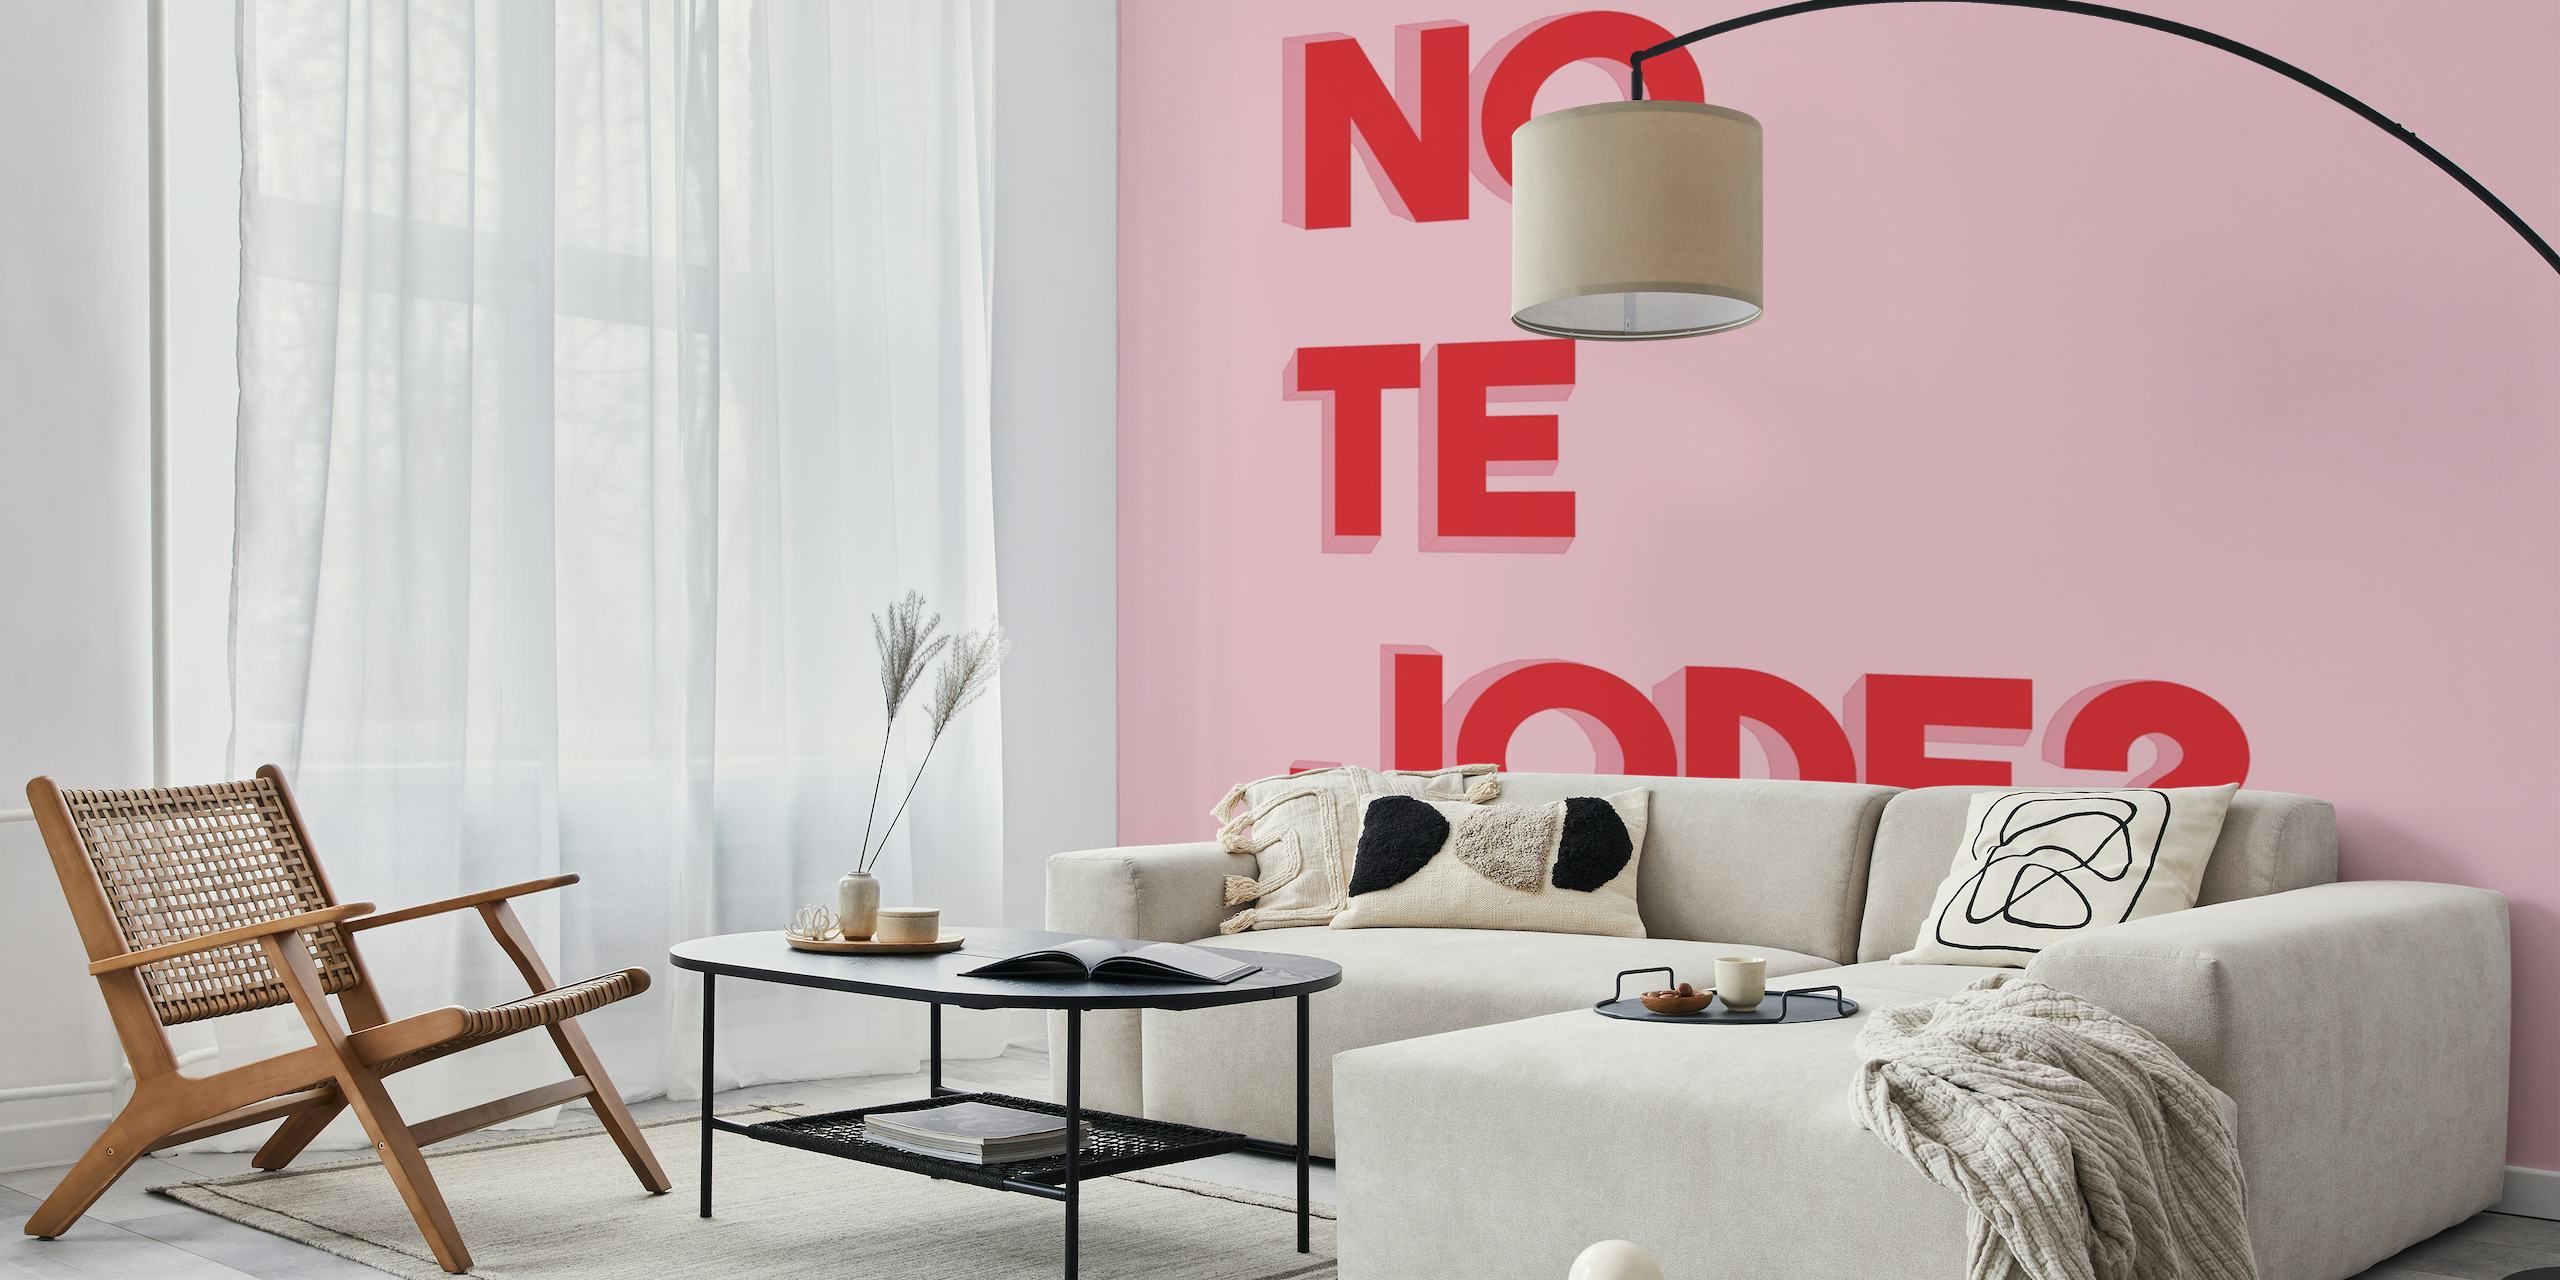 Fed rød tekst 'No te jode?' på et lyserødt baggrundsvægmaleri